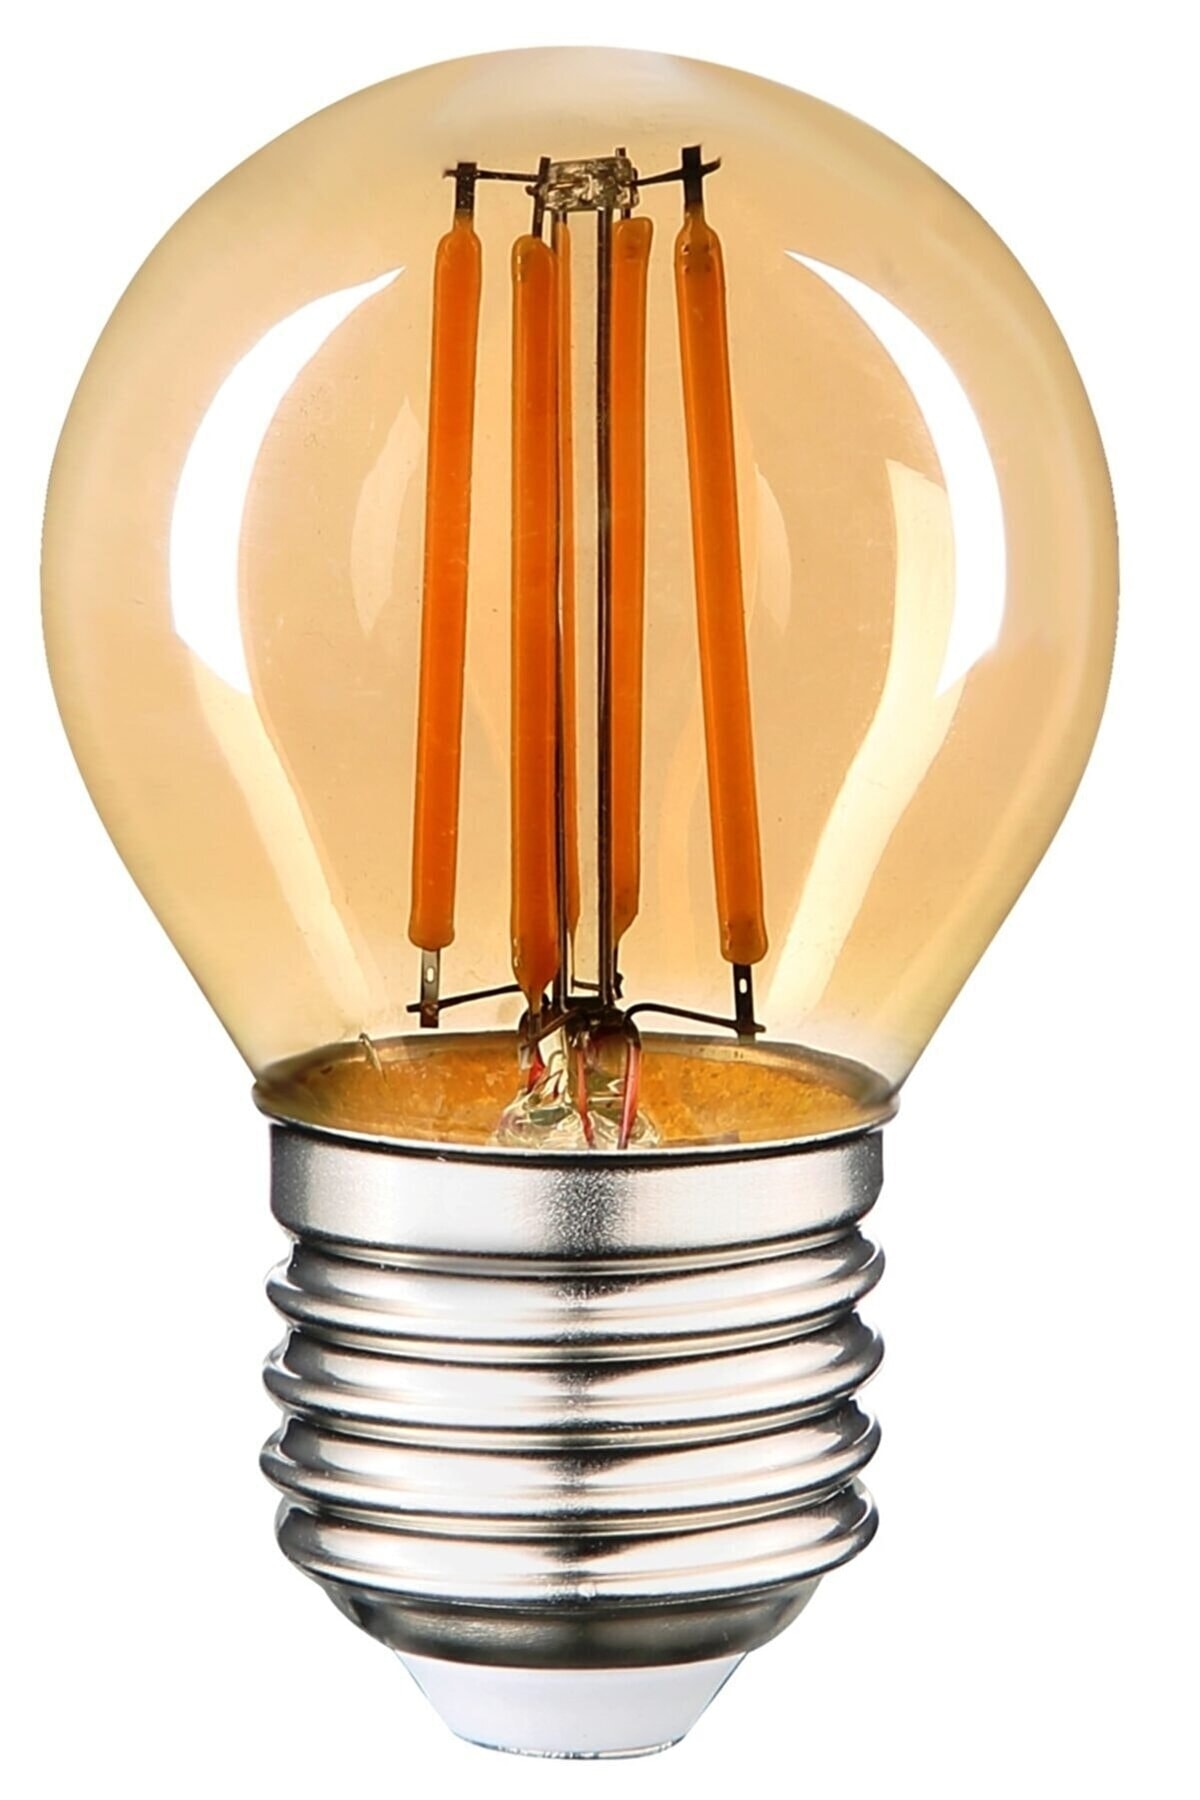 ORBUS G45 Küçük Top 4w E27 Duy Amber Sarı Işık Dekoratif Led Ampul 